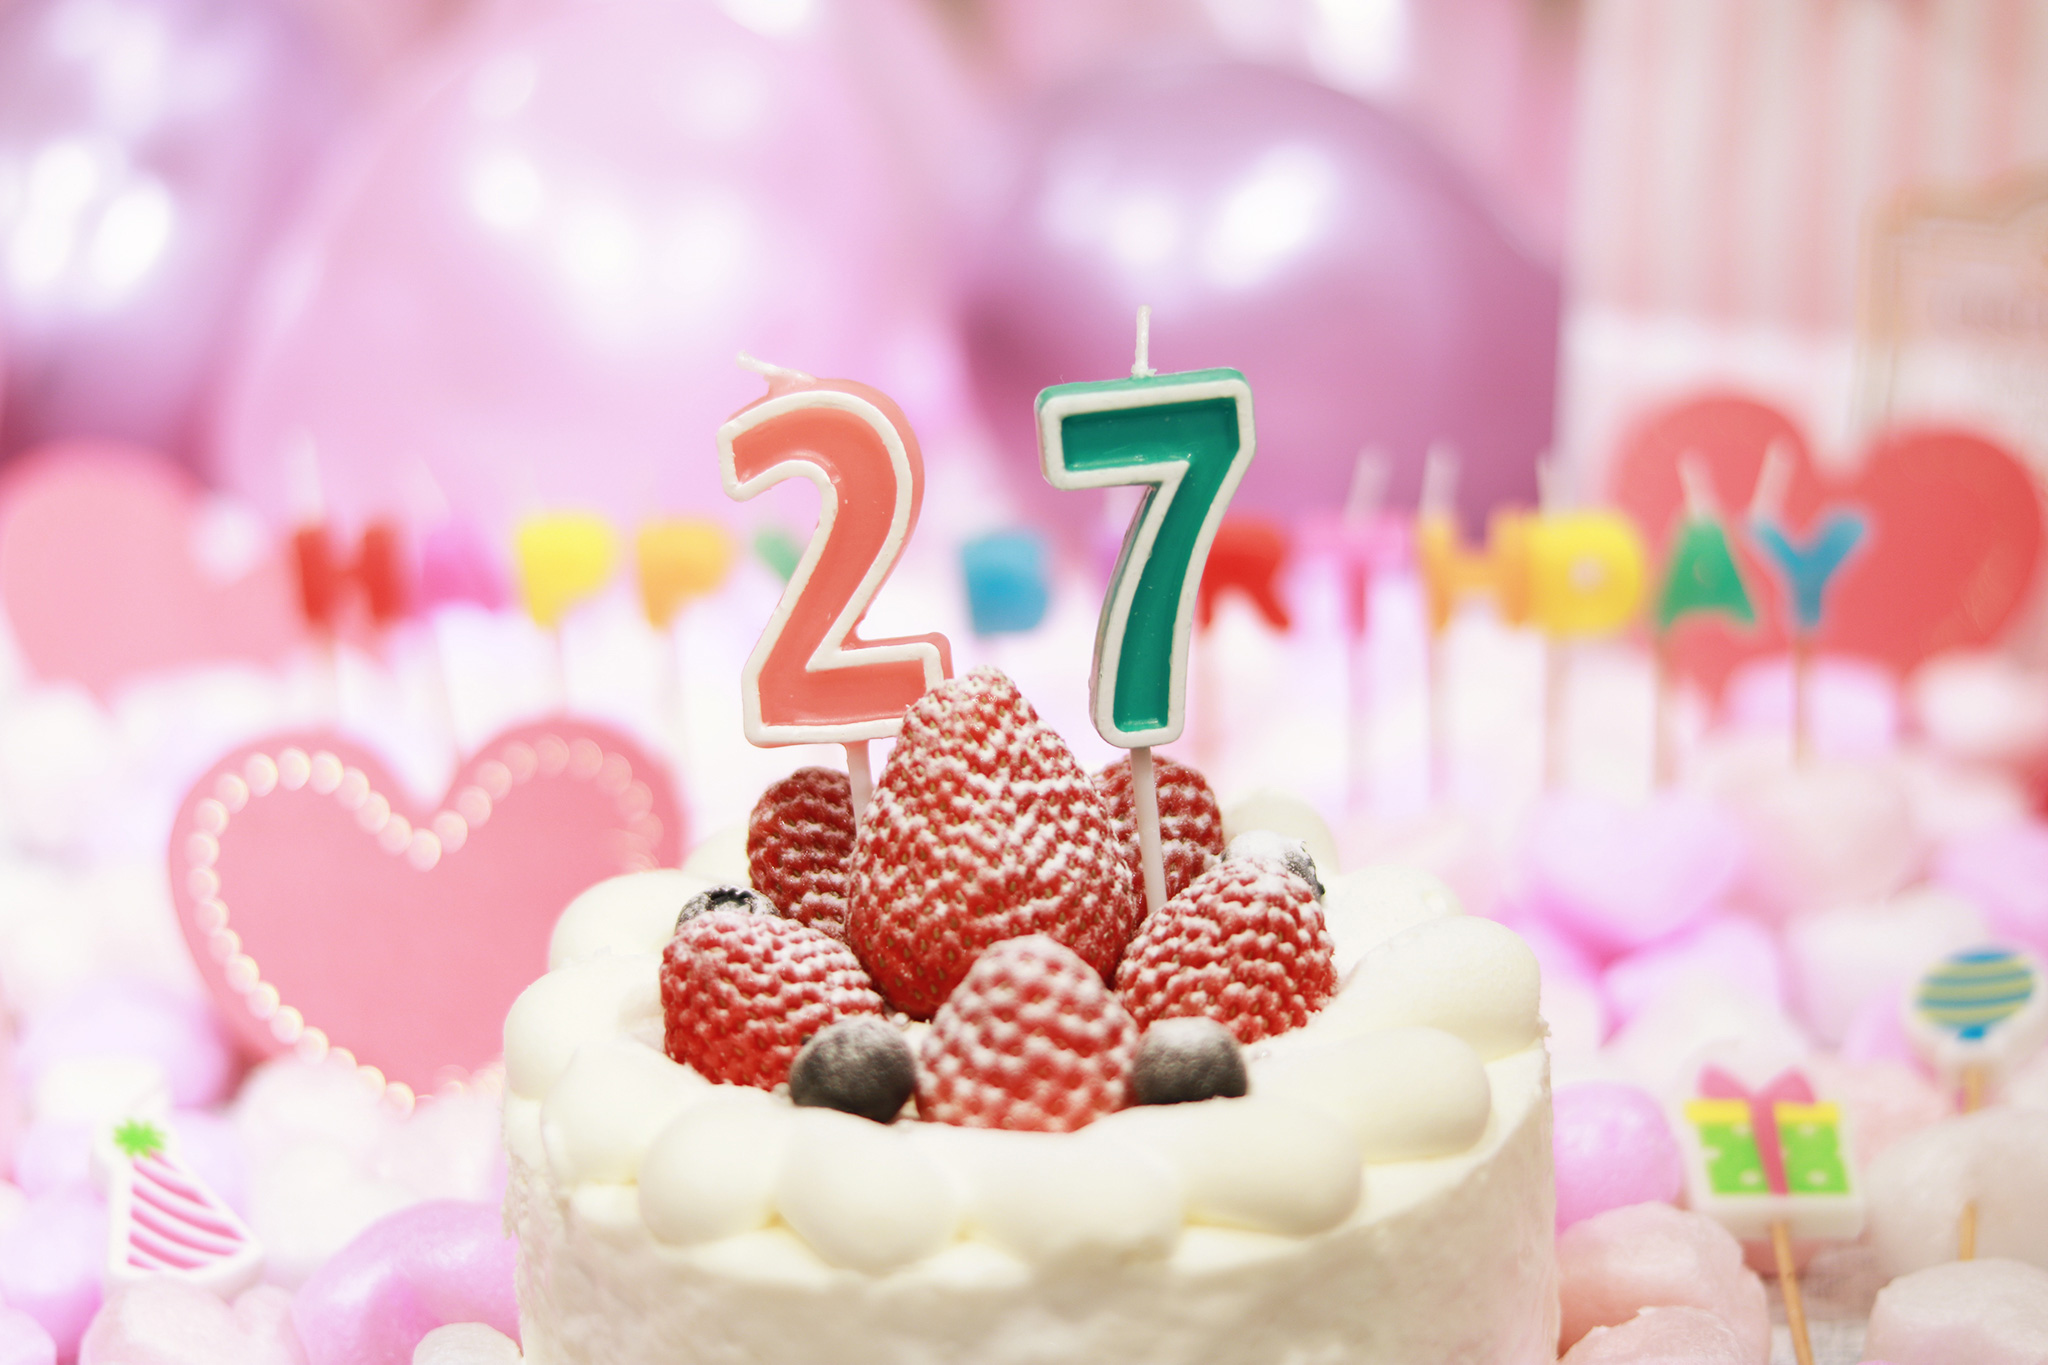 オシャレな誕生日画像 可愛いケーキとキャンドルでお祝い 27歳編 のフリー画像 おしゃれなフリー写真素材 Girly Drop